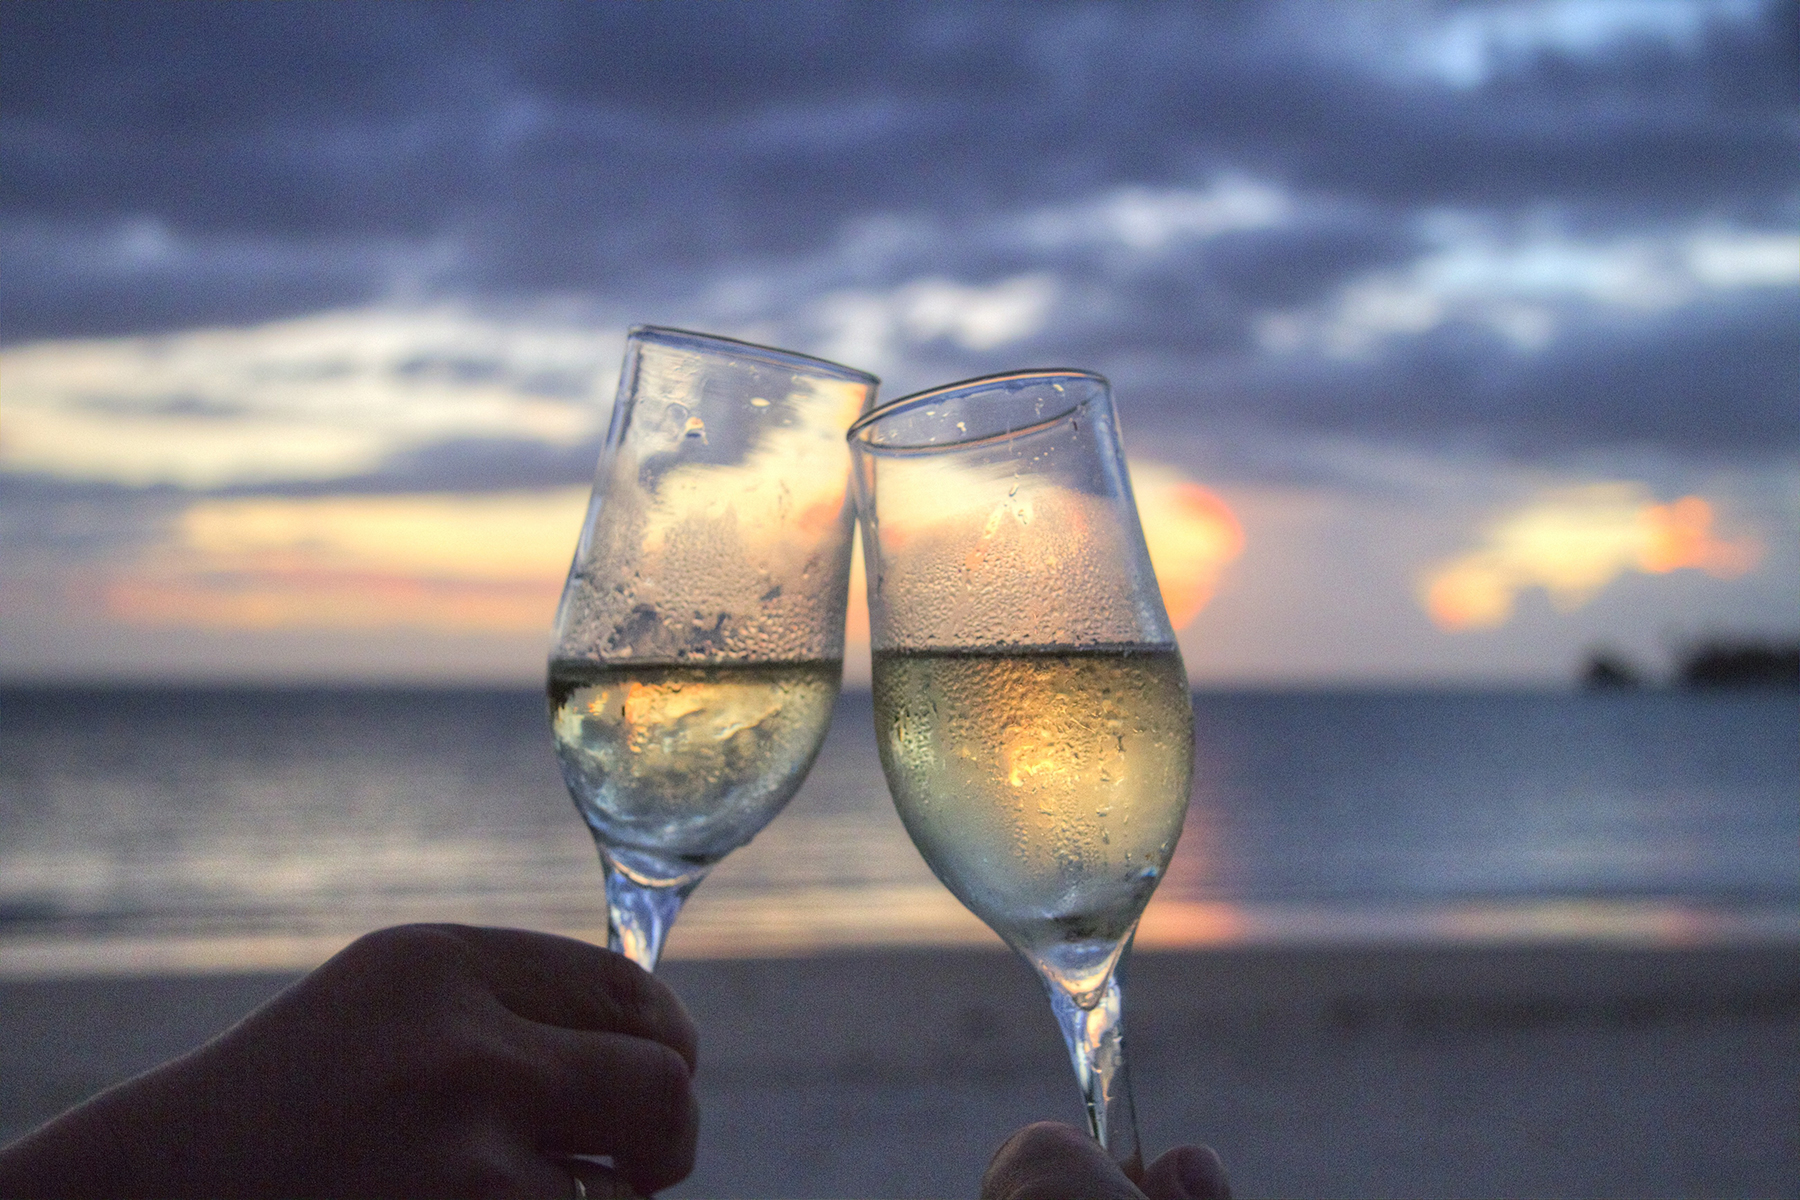 Wine Toast at Sunset at Beach